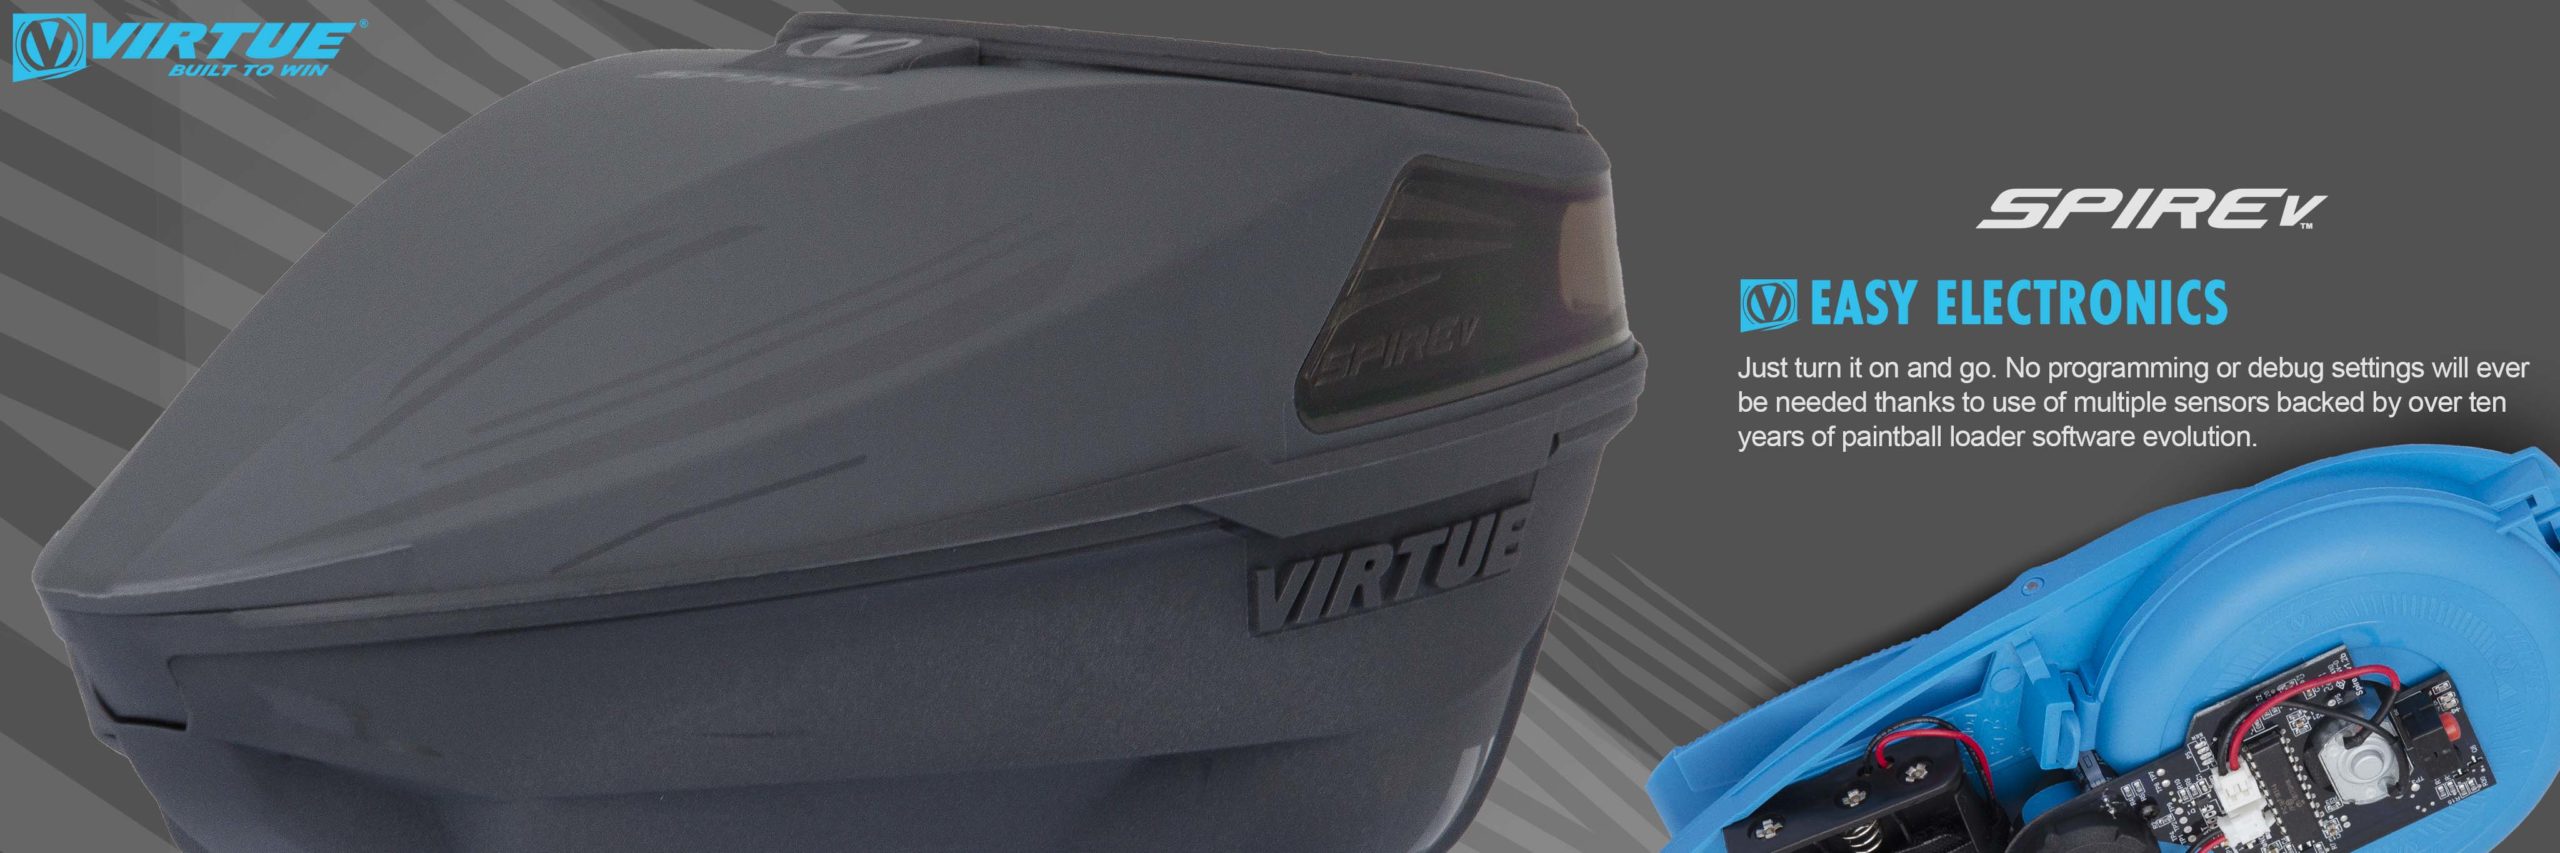 Virtue - Spire V - 3up - Stealth-Grey